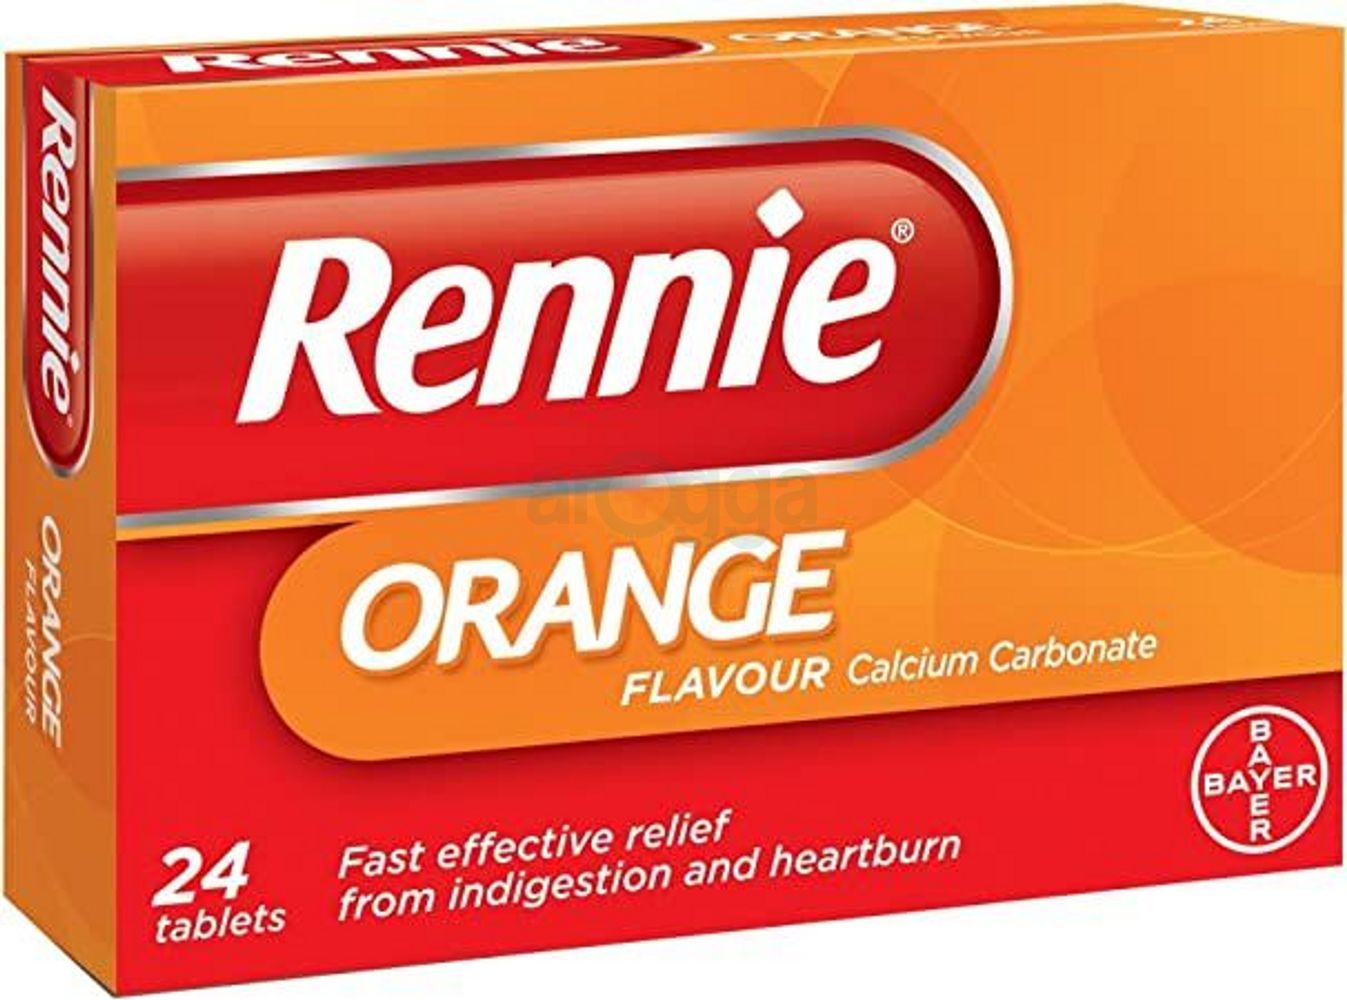 Rennie Orange Flavour